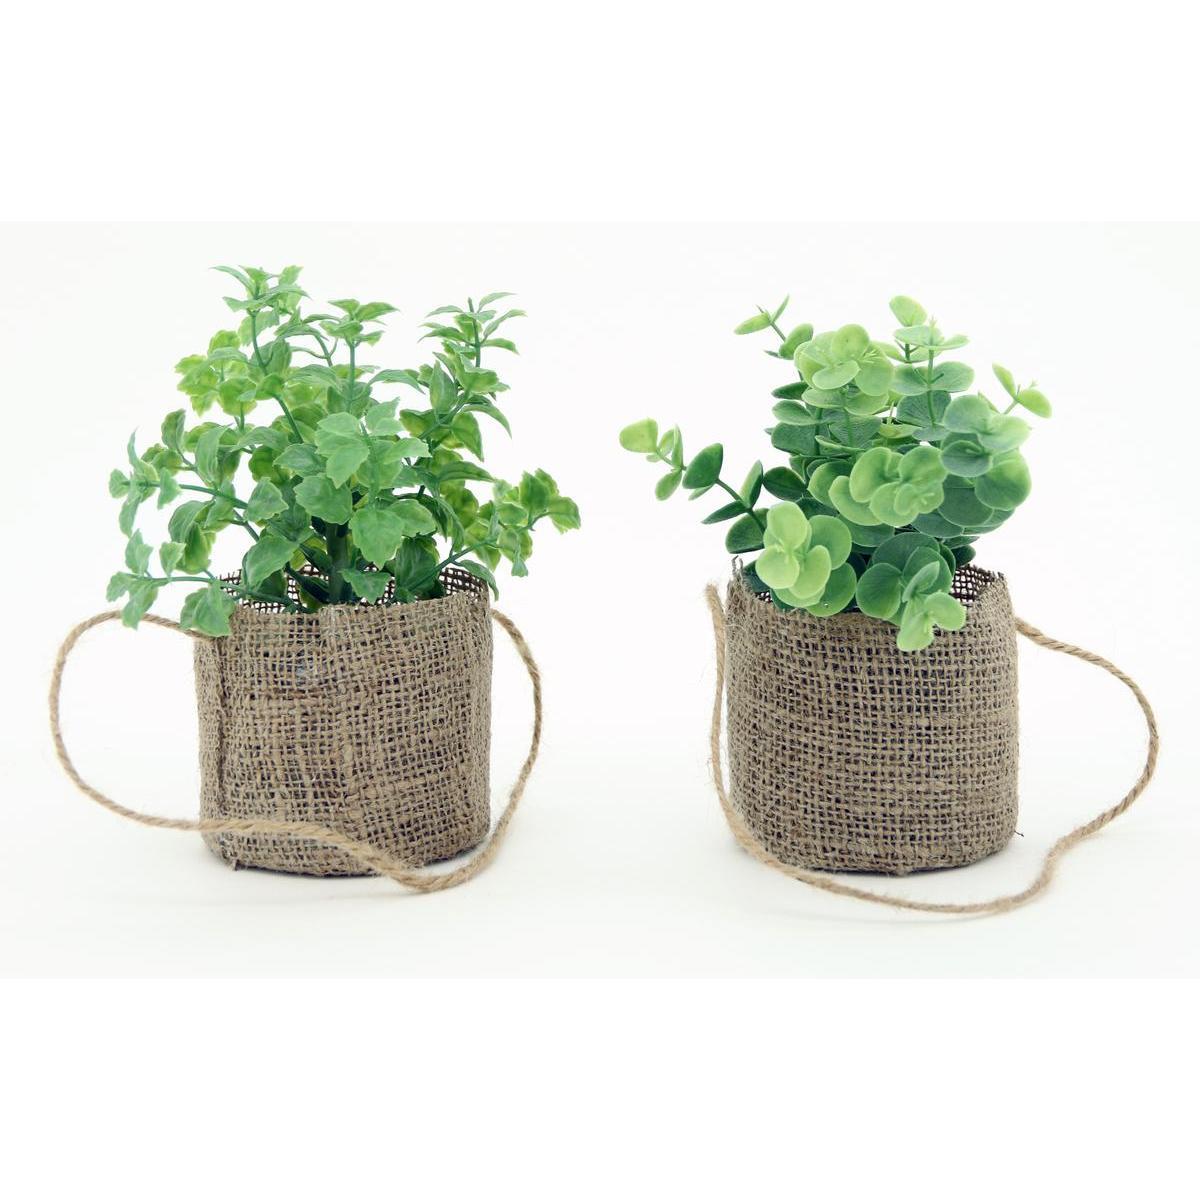 Herbes aromatiques en sac toile de jute - H 20 cm - Différents modèles